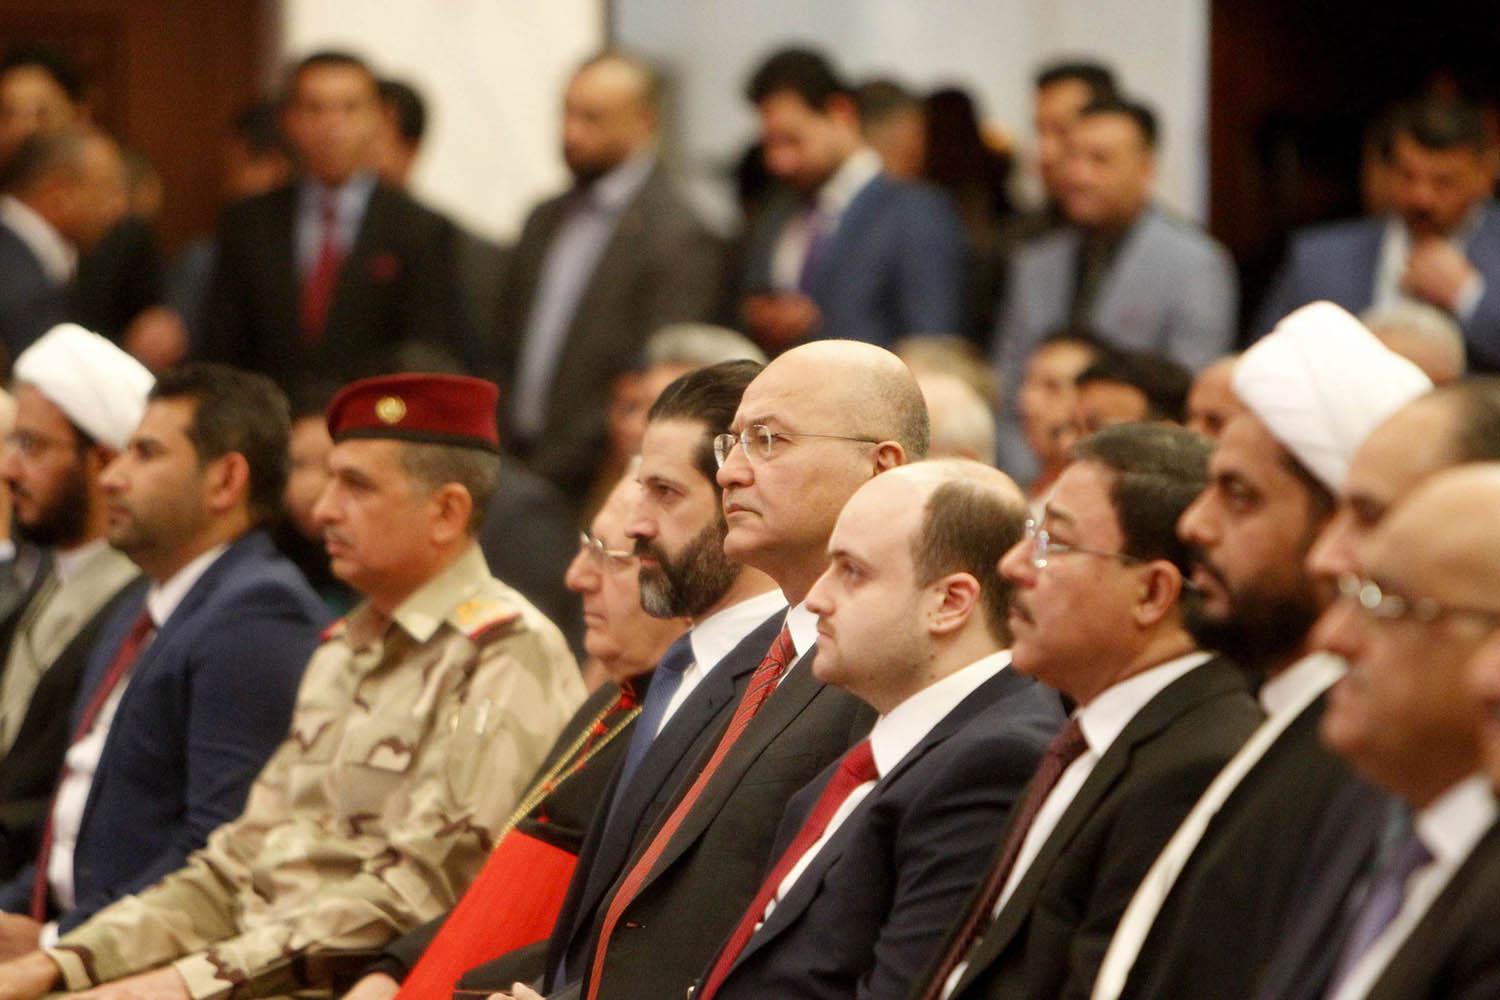 الرئيس العراقي برهم صالح يتوسط مجموعة من السياسيين في العراق في حفل ببغداد